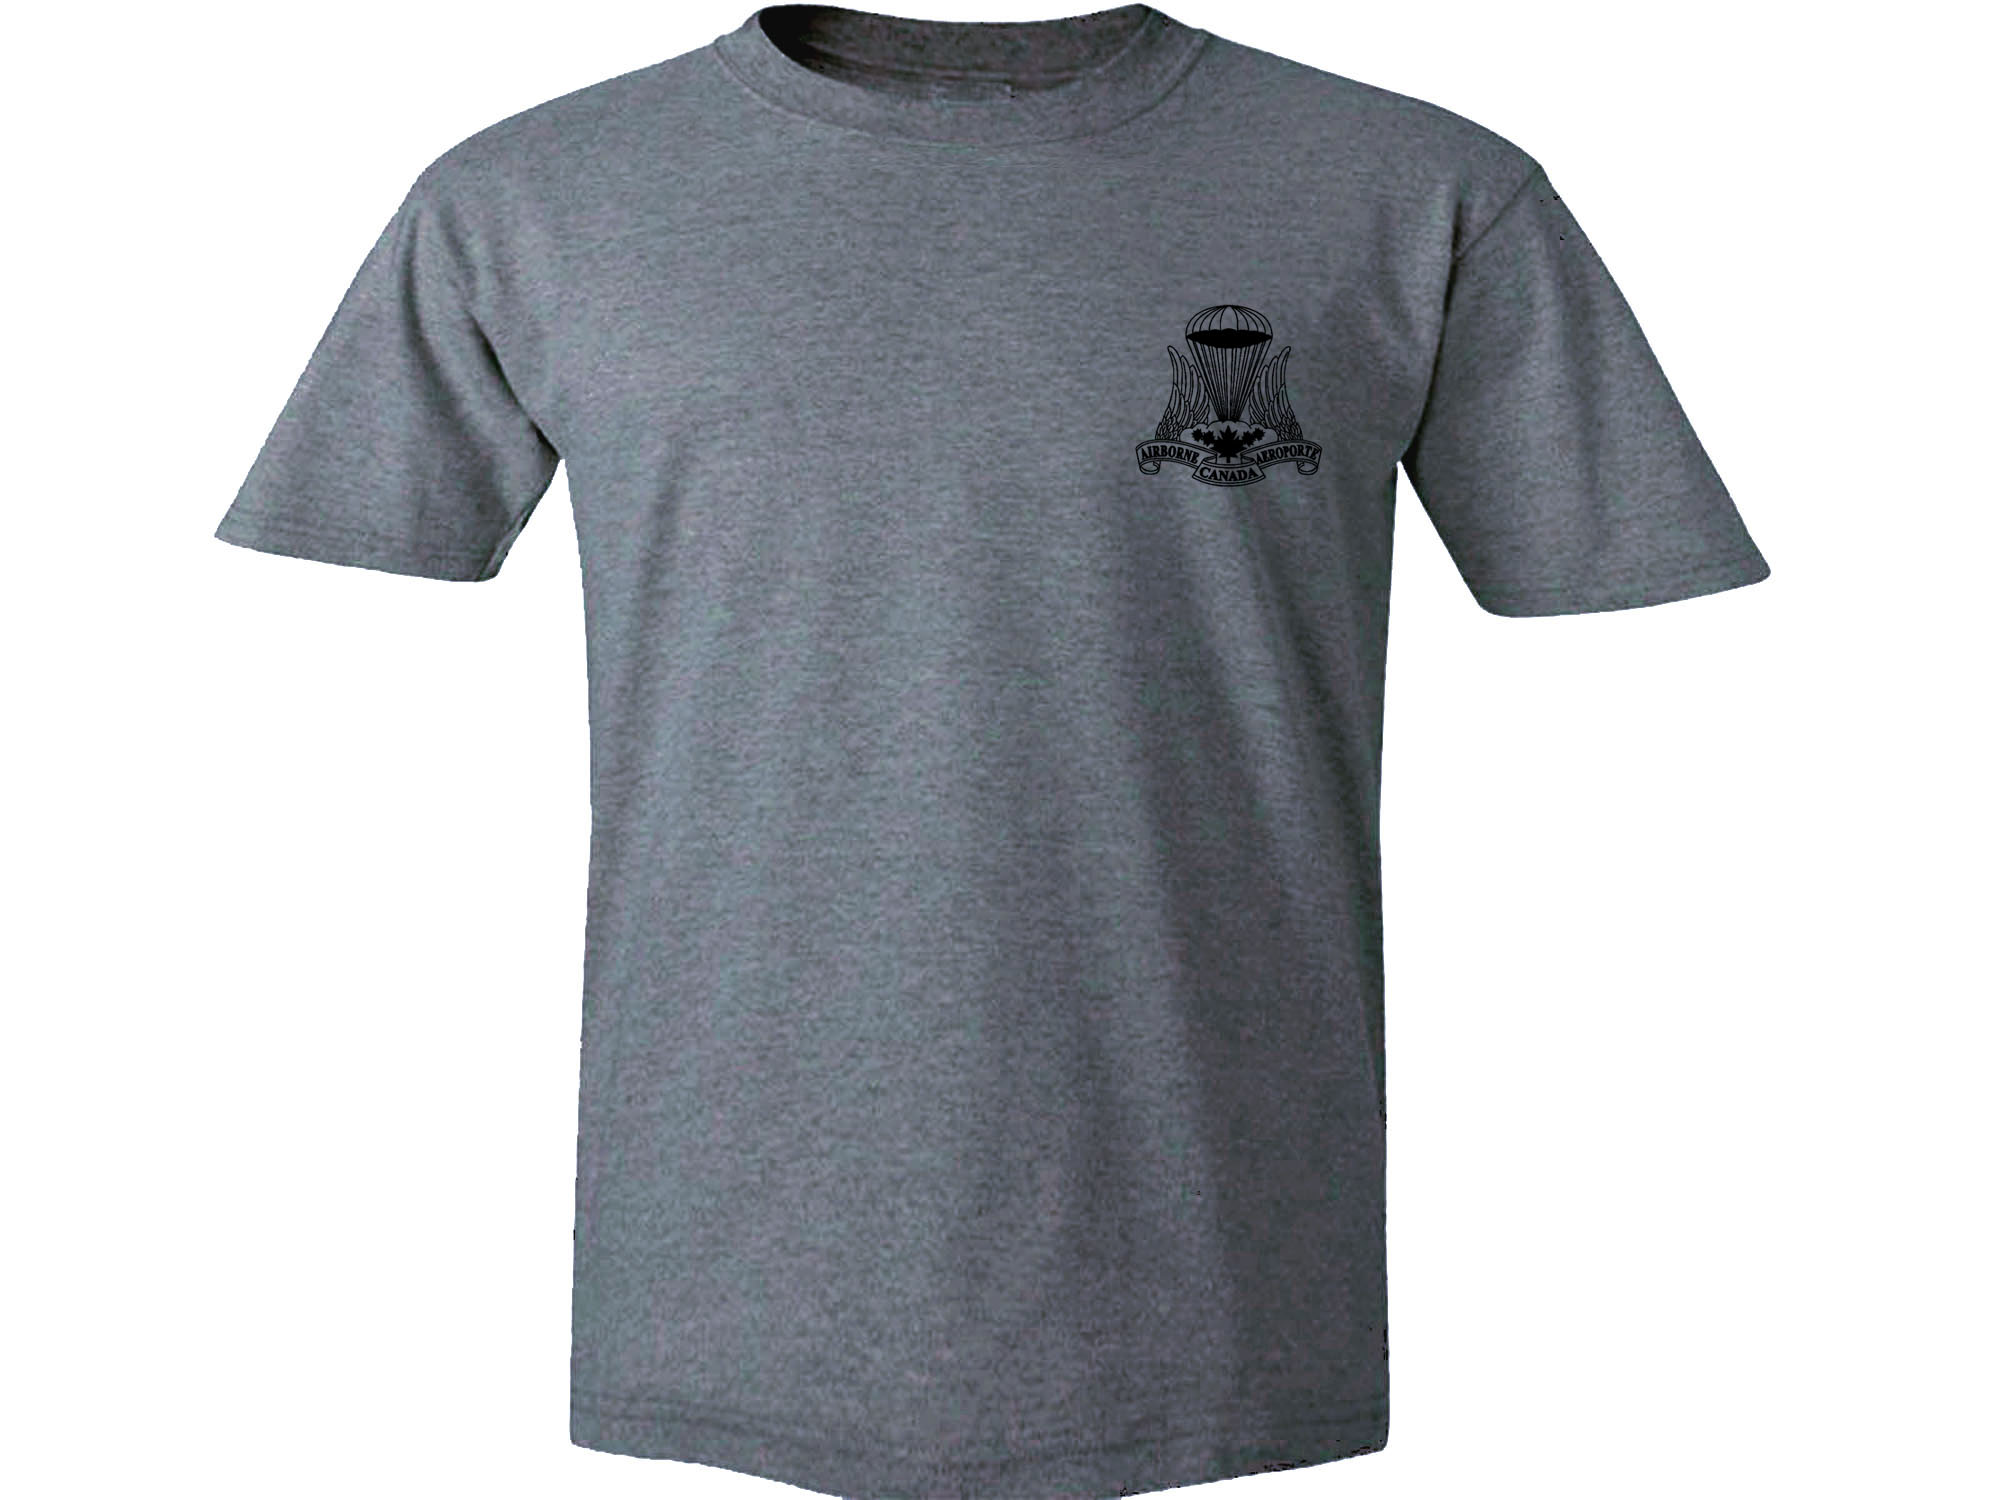 Canadian Airborne Regiment retro symbol gray t-shirt